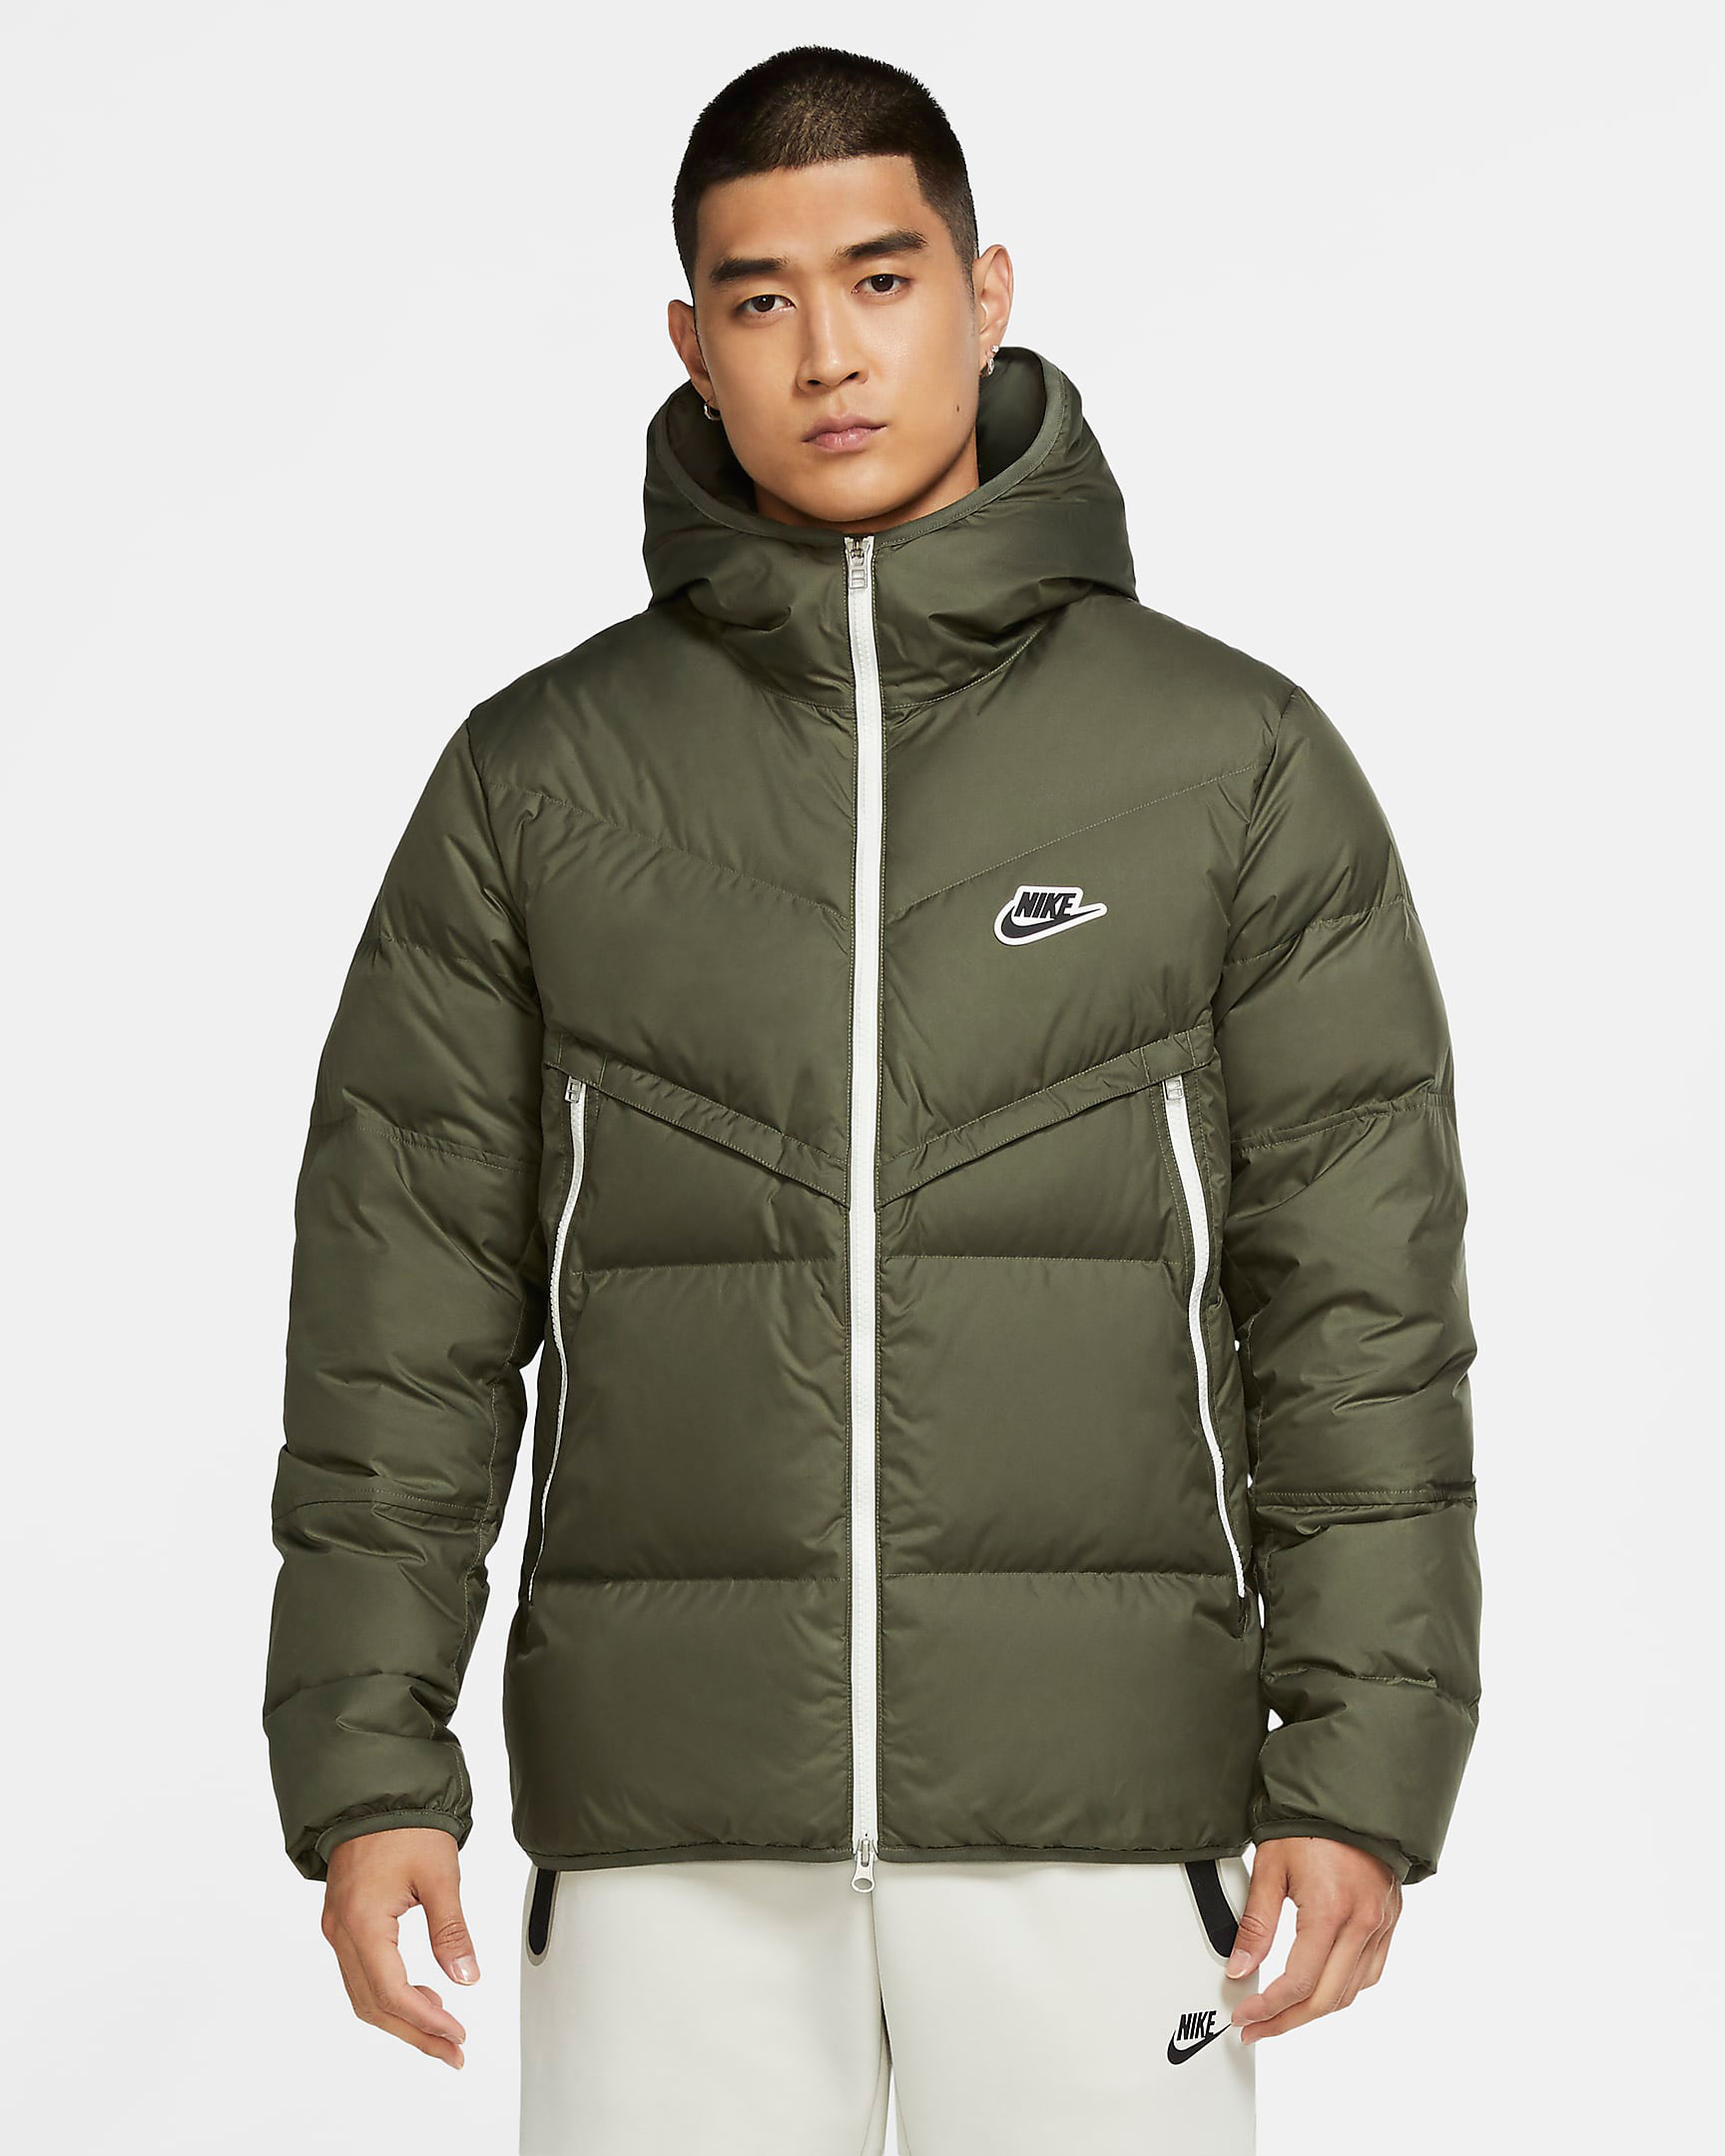 nike-windrunner-winter-jacket-twilight-marsh-olive-green